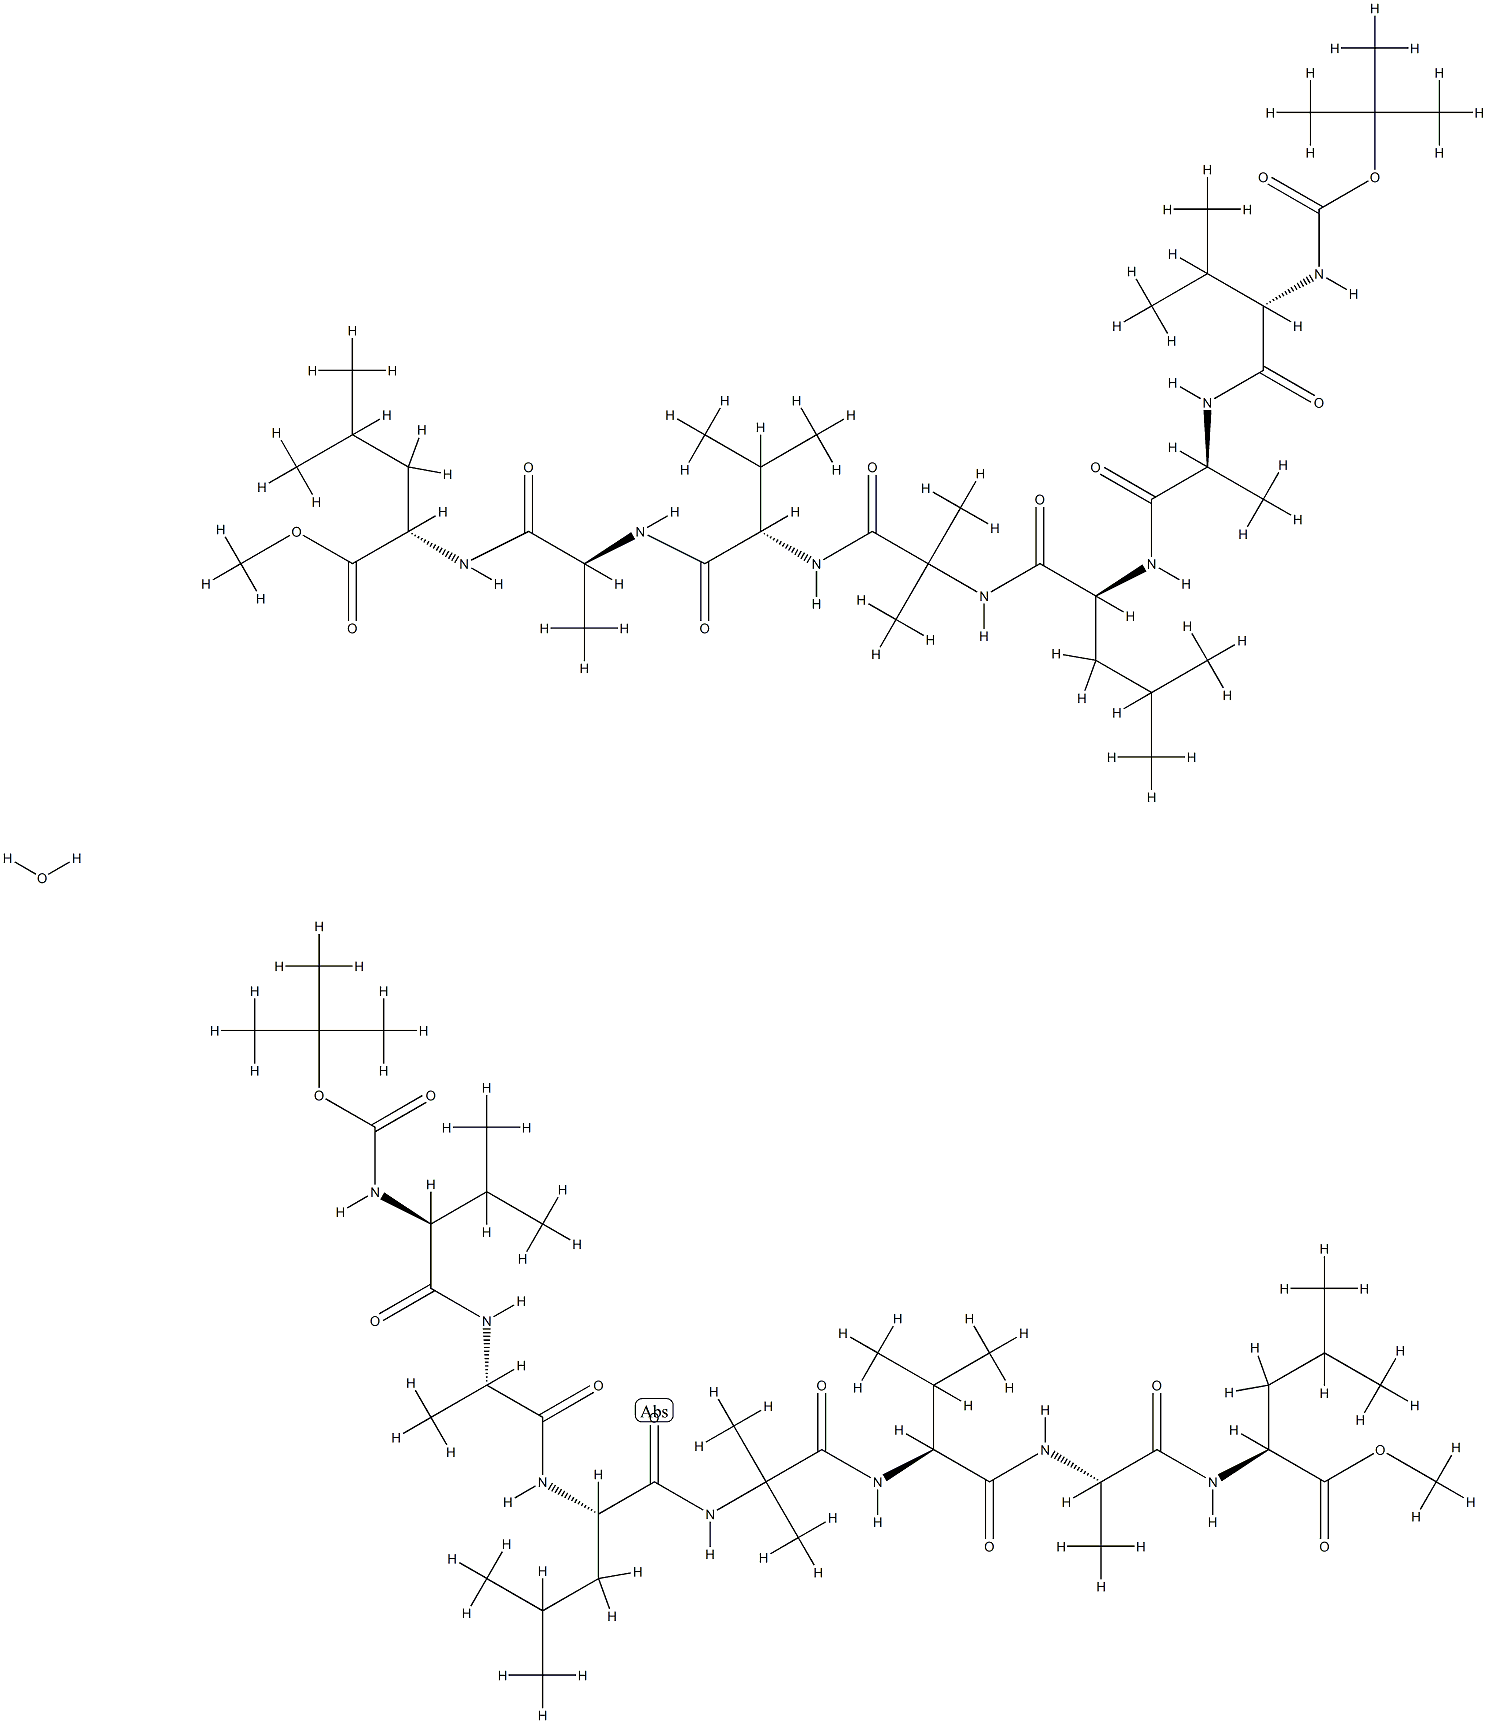 127337-62-6 tert-butyloxycarbonyl-valyl-alanyl-leucyl-2-aminoisobutyryl-valyl-alanyl-leucyl methyl ester